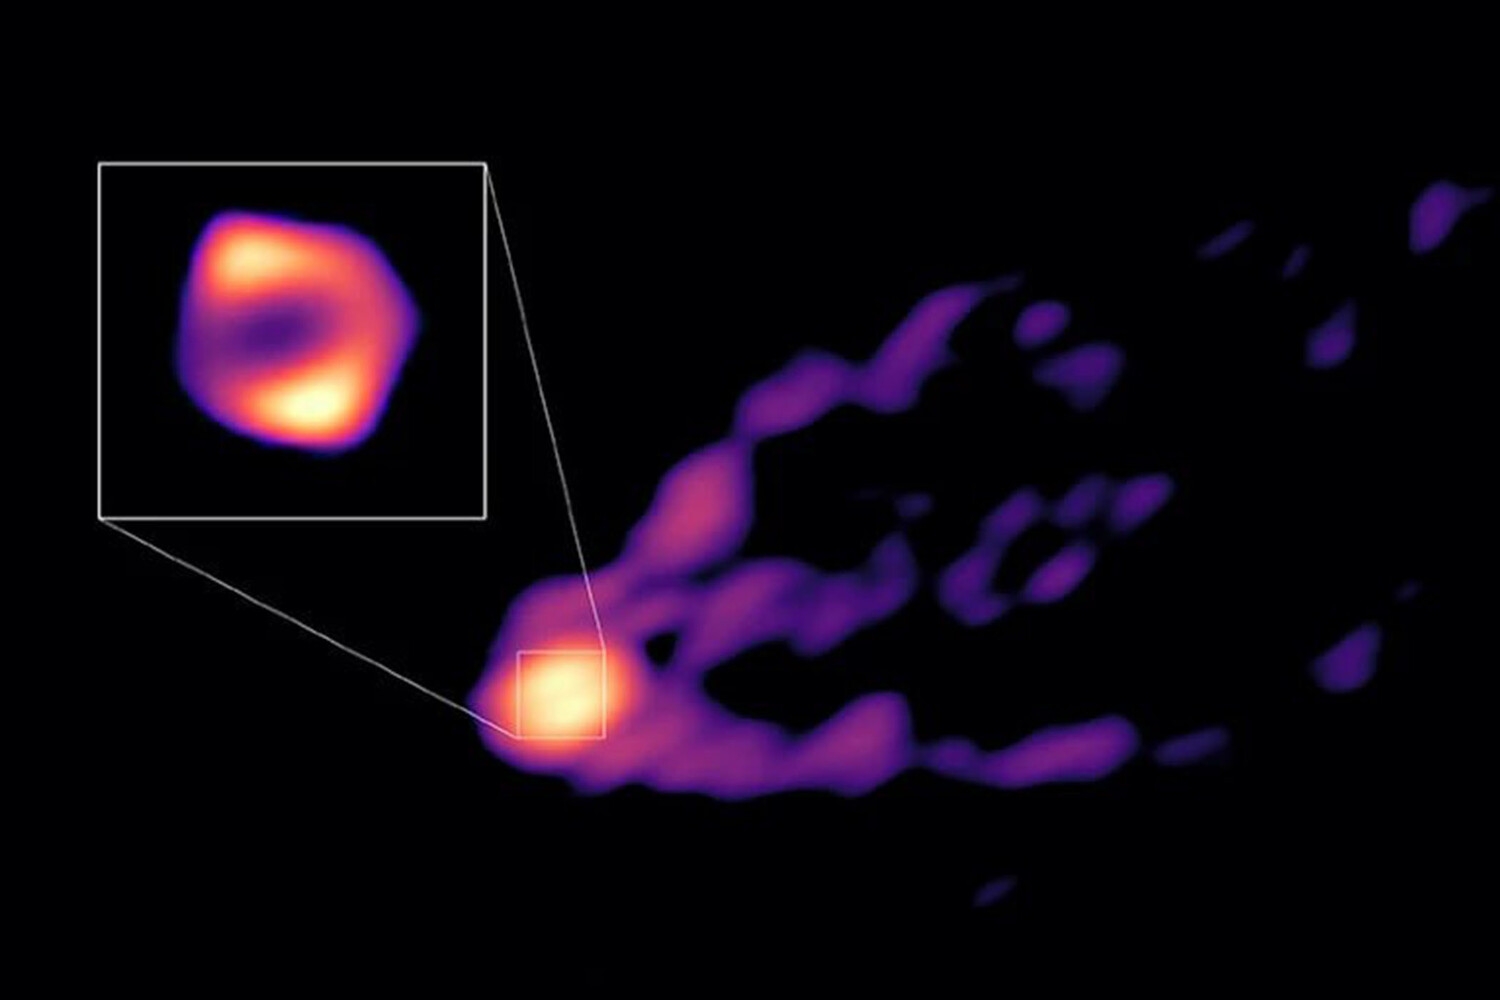 Астрономы получили прямое изображение потока материи, бьющего из черной дыры